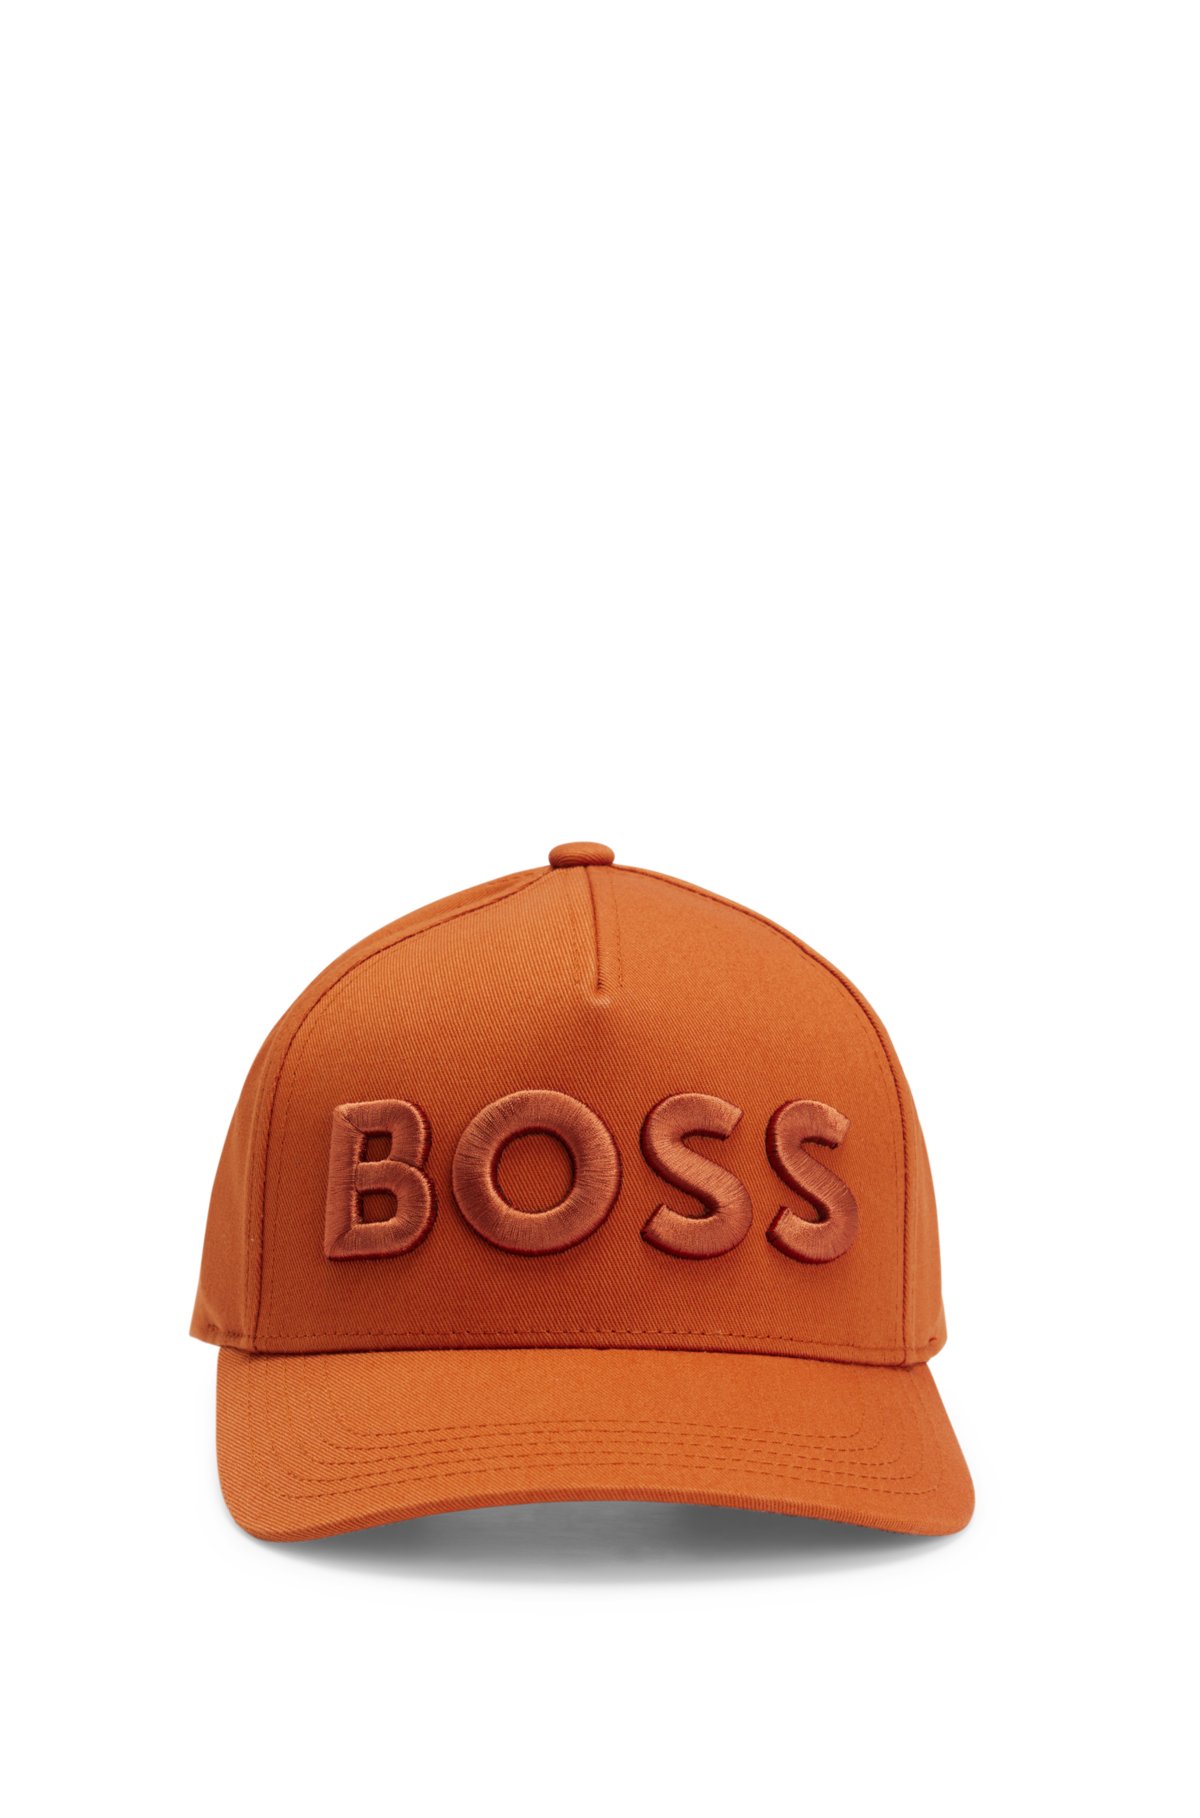 BOSS - Kasket i bomuldstwill med logo og strop